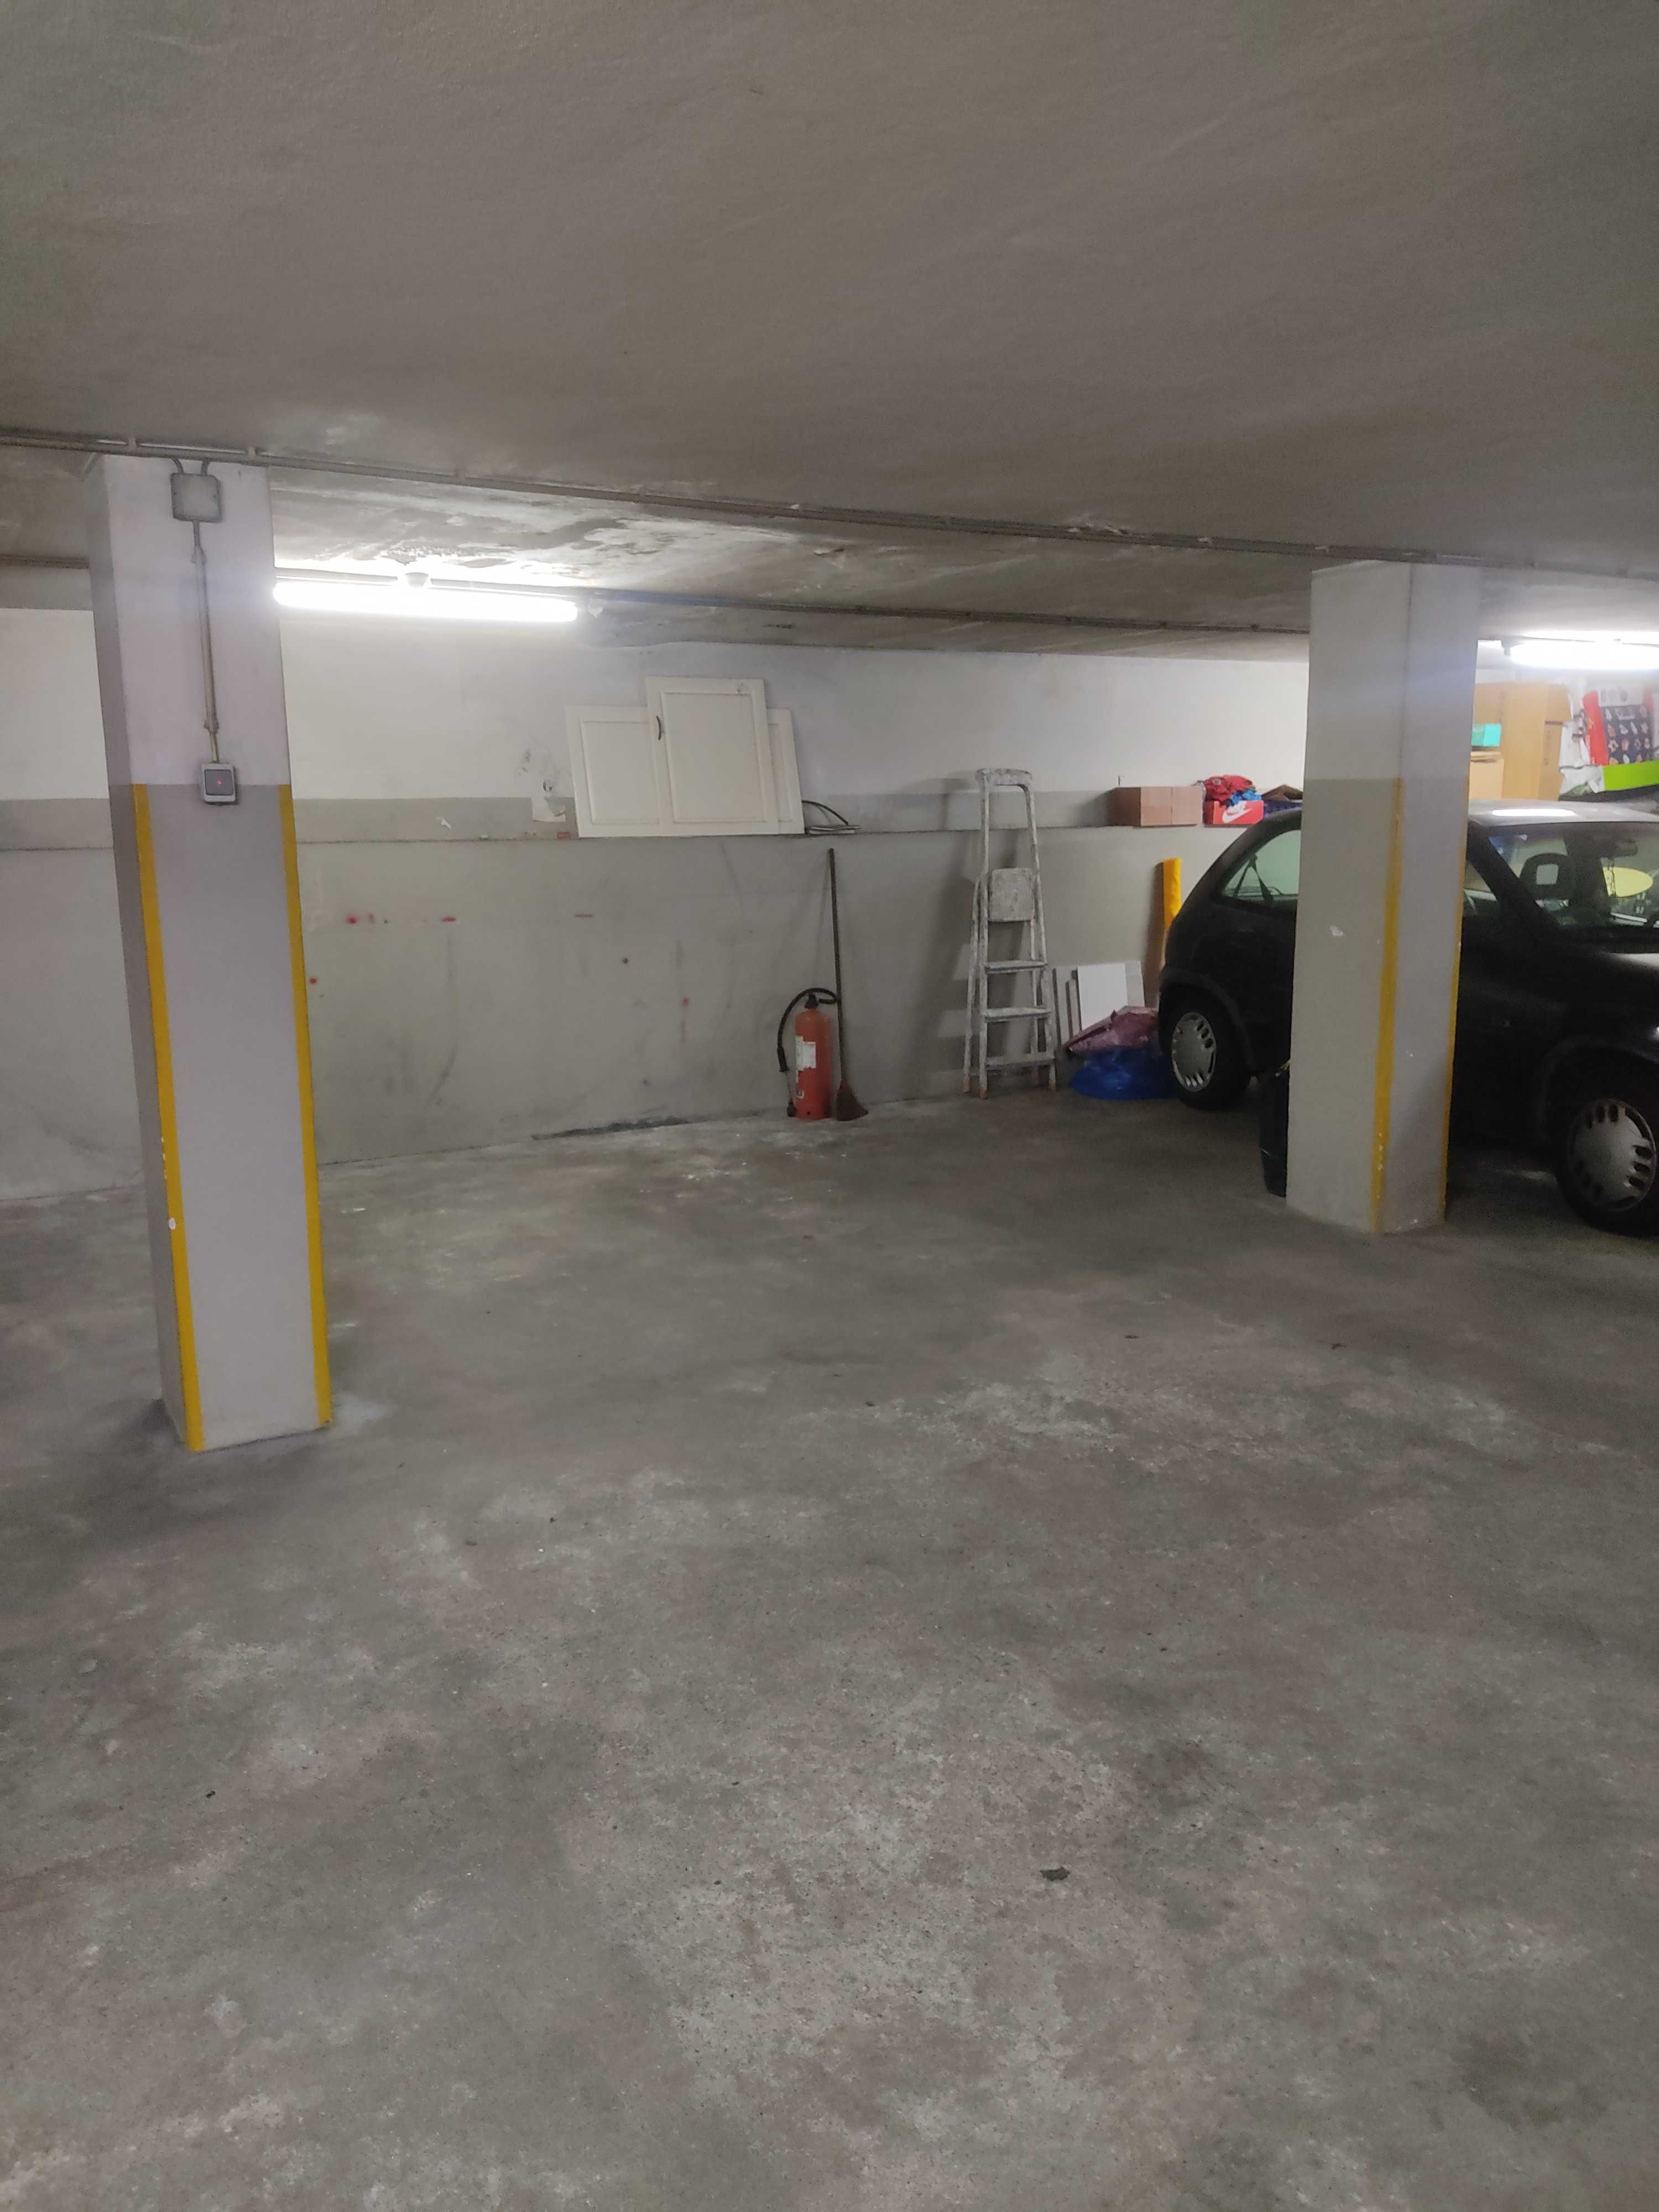 Garagem Espaçosa na Maia: Reserve já o Seu Espaço de Estacionamento!